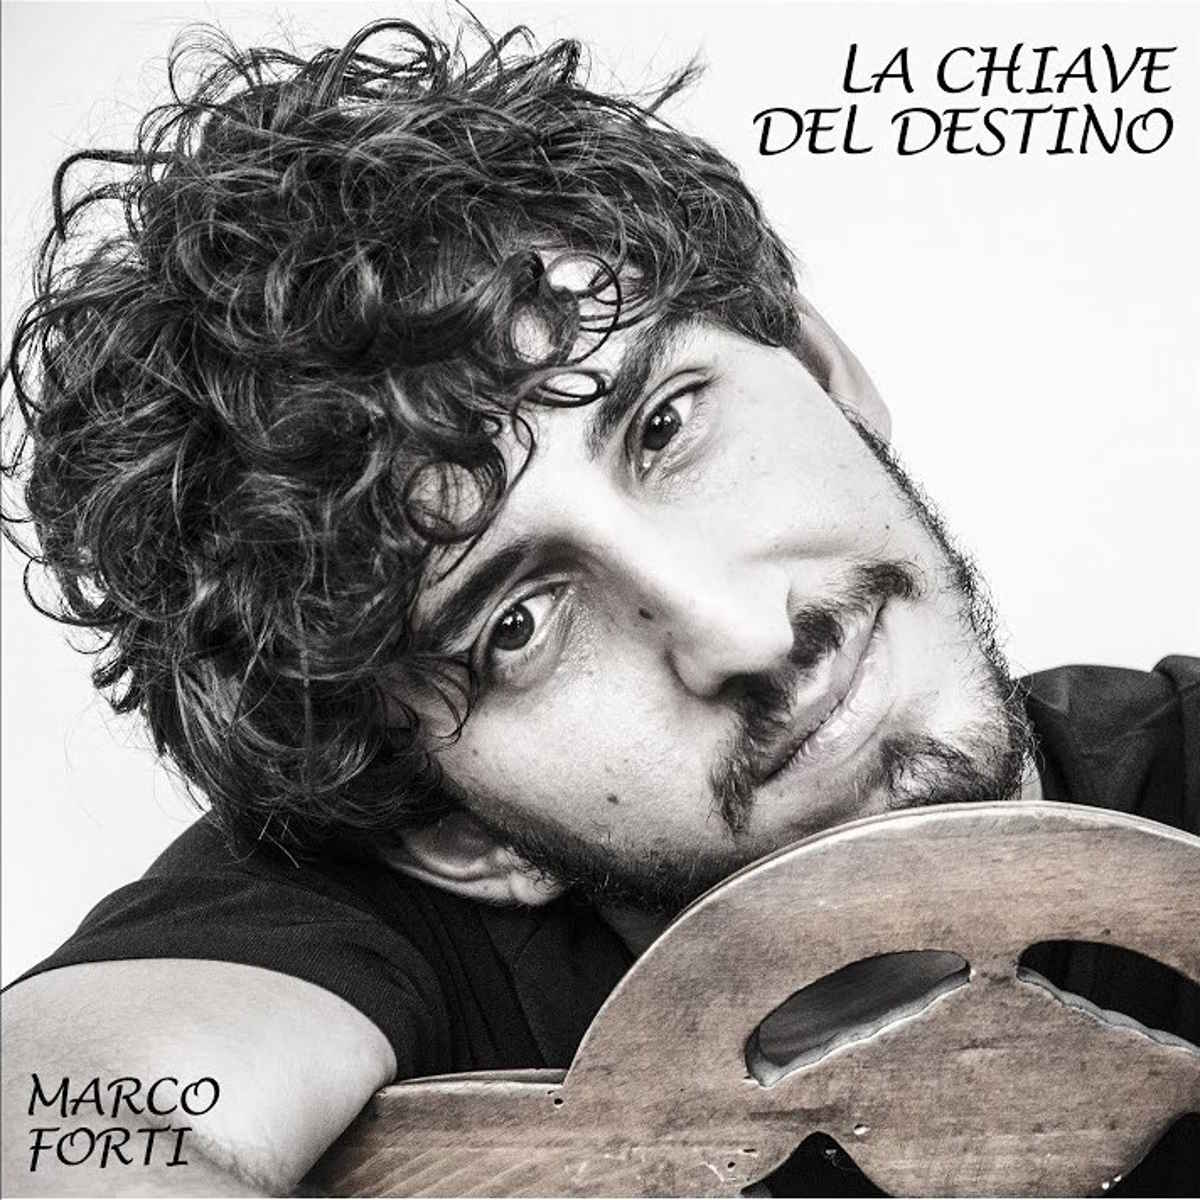 Marco Forti - “La Chiave del Destino”